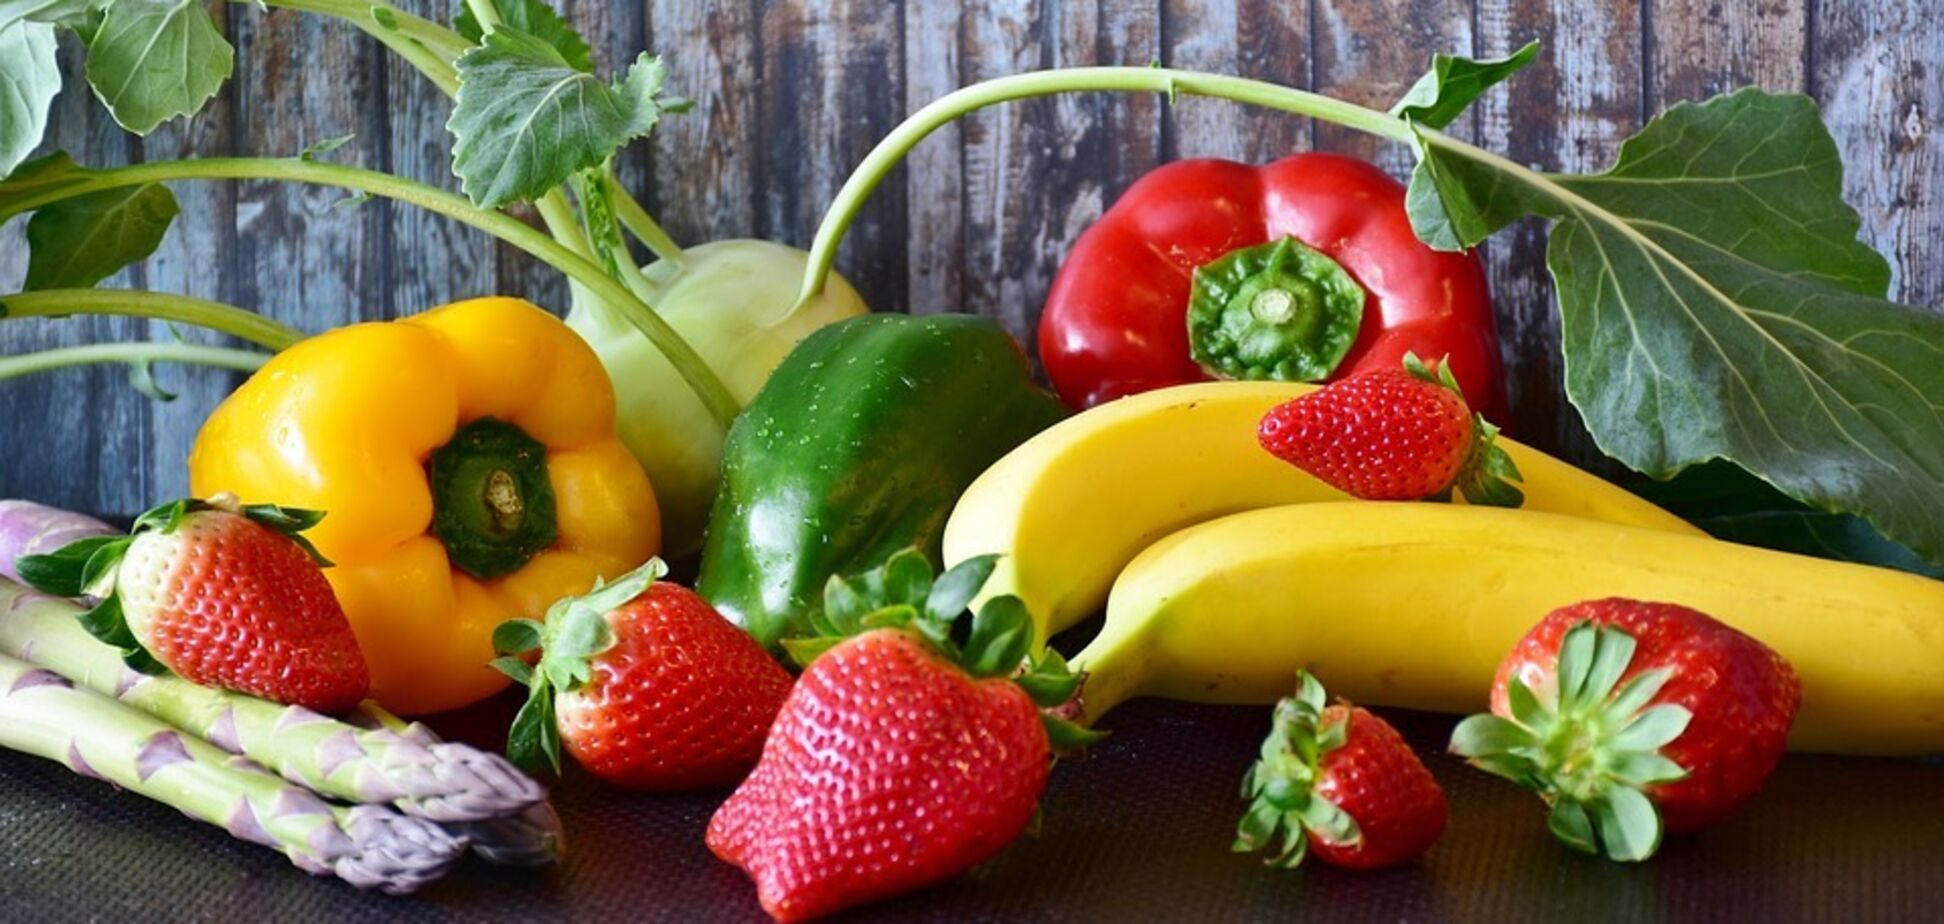 Как сохранить свежесть овощей, фруктов и ягод надолго: 5 простых лайфхаков